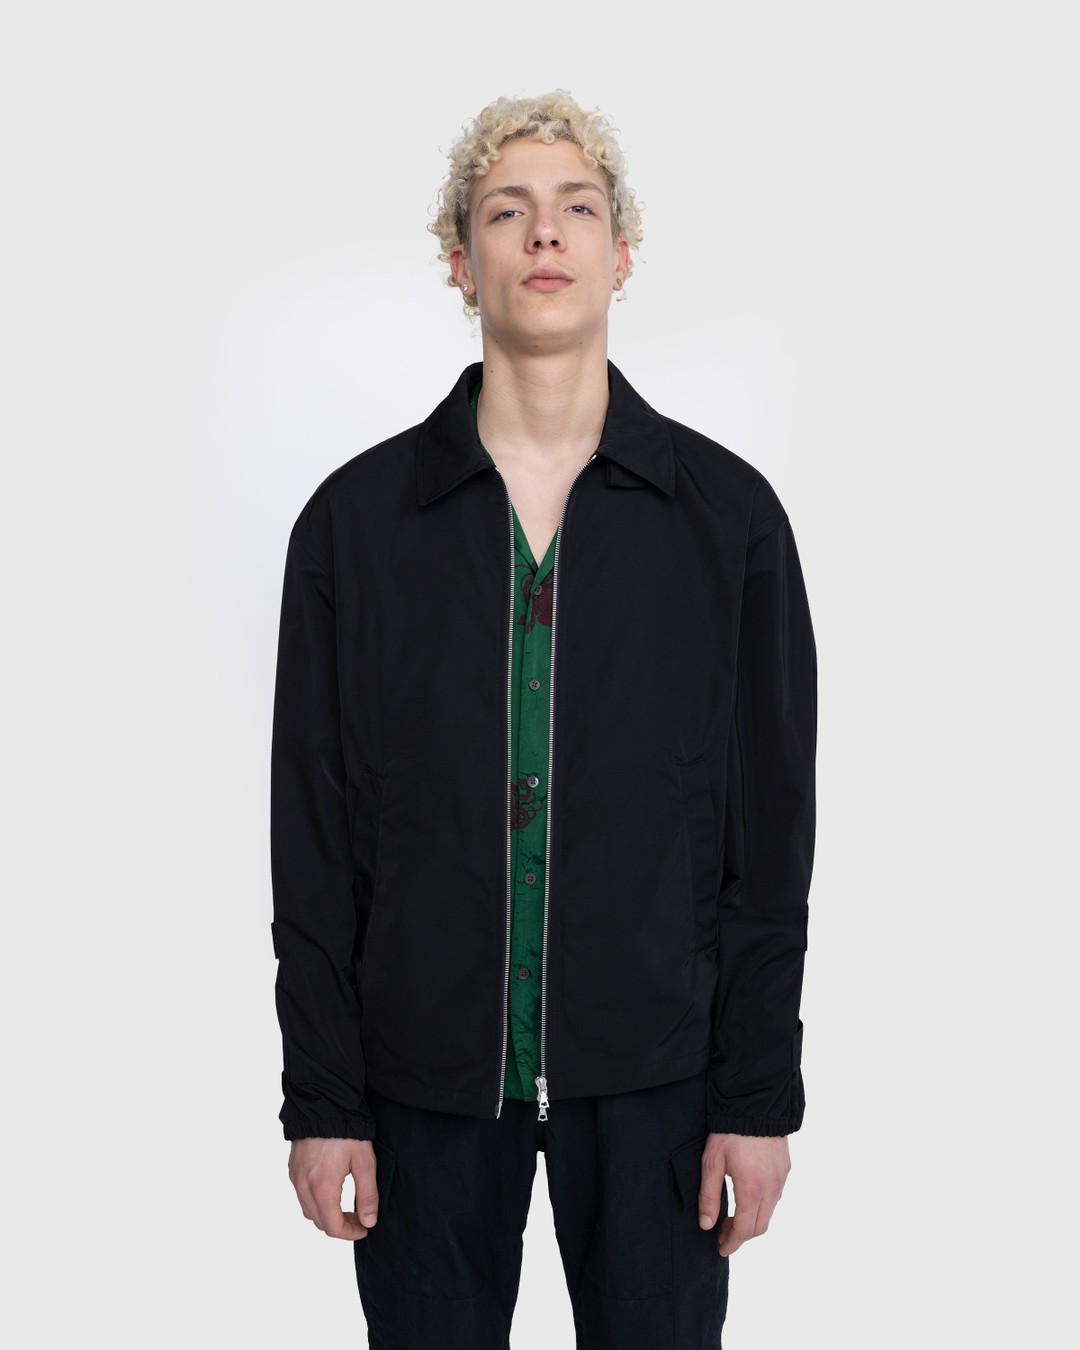 Dries van Noten – Vona Jacket Black - Outerwear - Black - Image 2